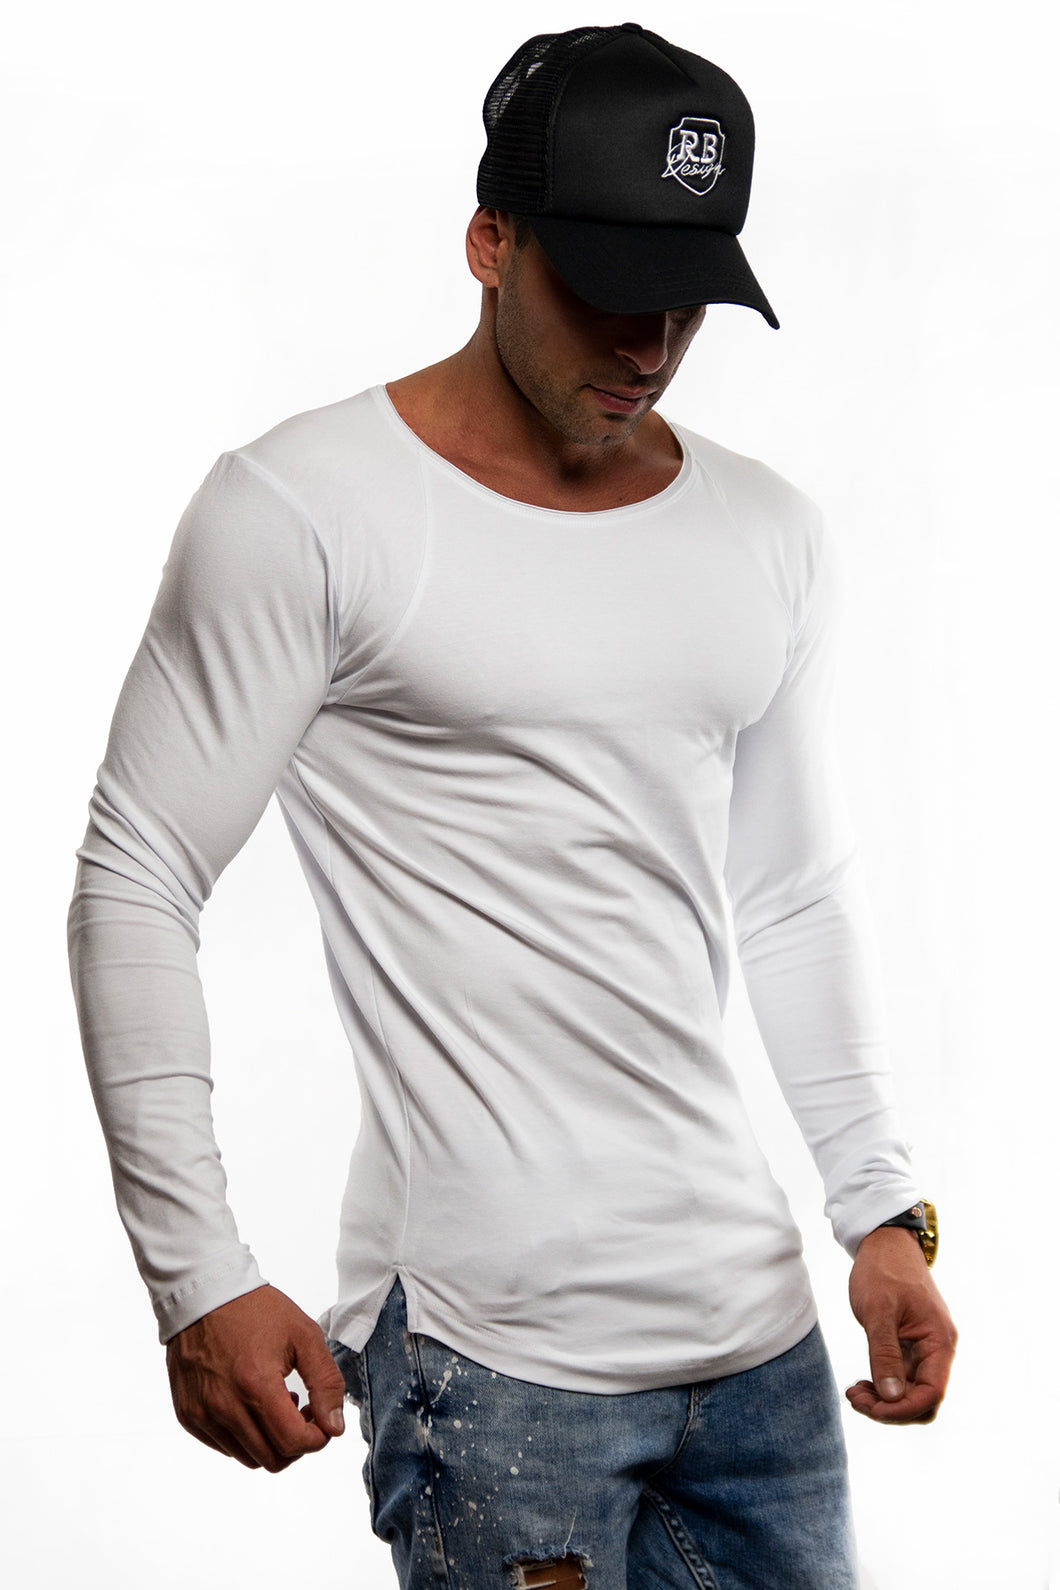 Plain White Scoop Neck Long Sleeve T-shirt